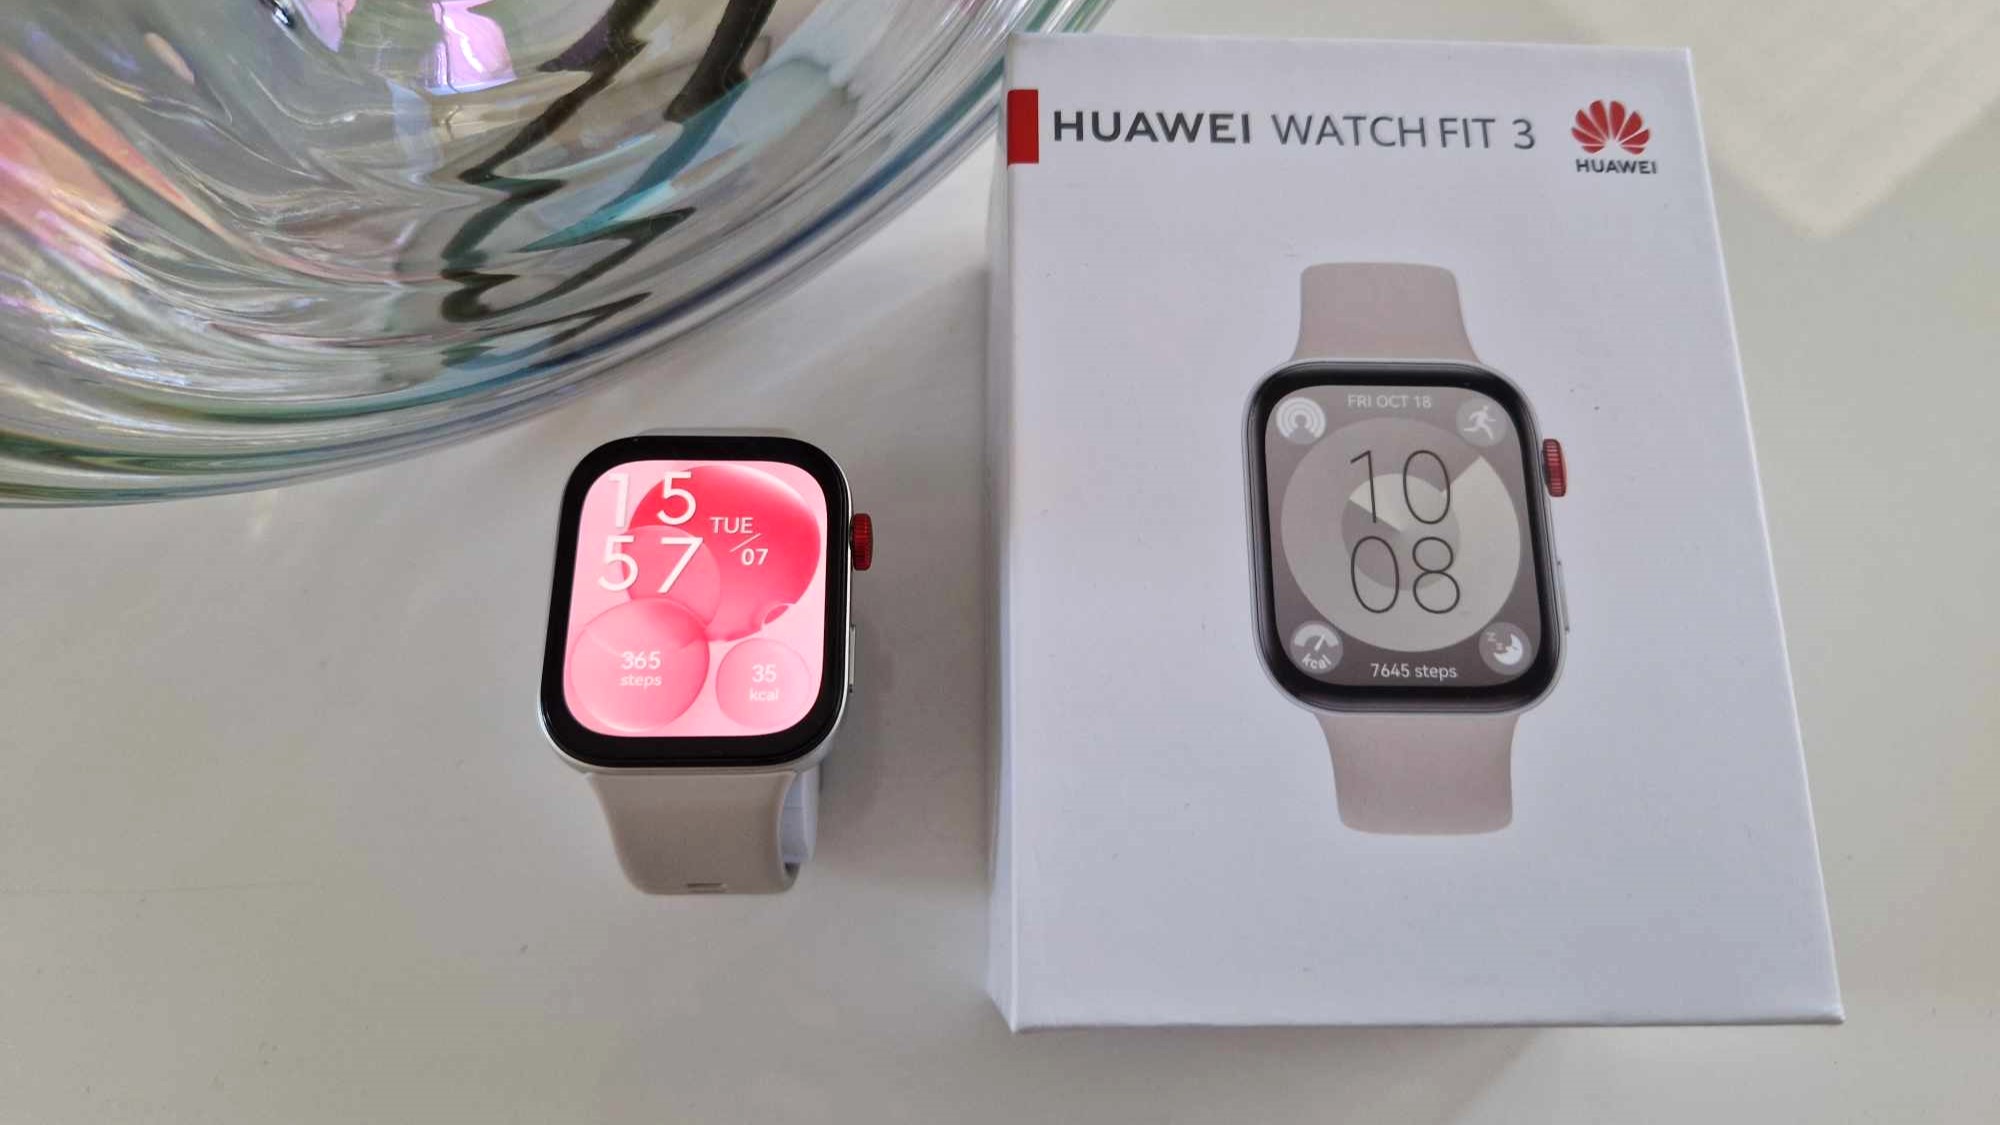 En vit Huawei Watch Fit 3 ligger bredvid sin tillhörande förpackning på ett vitt bord.